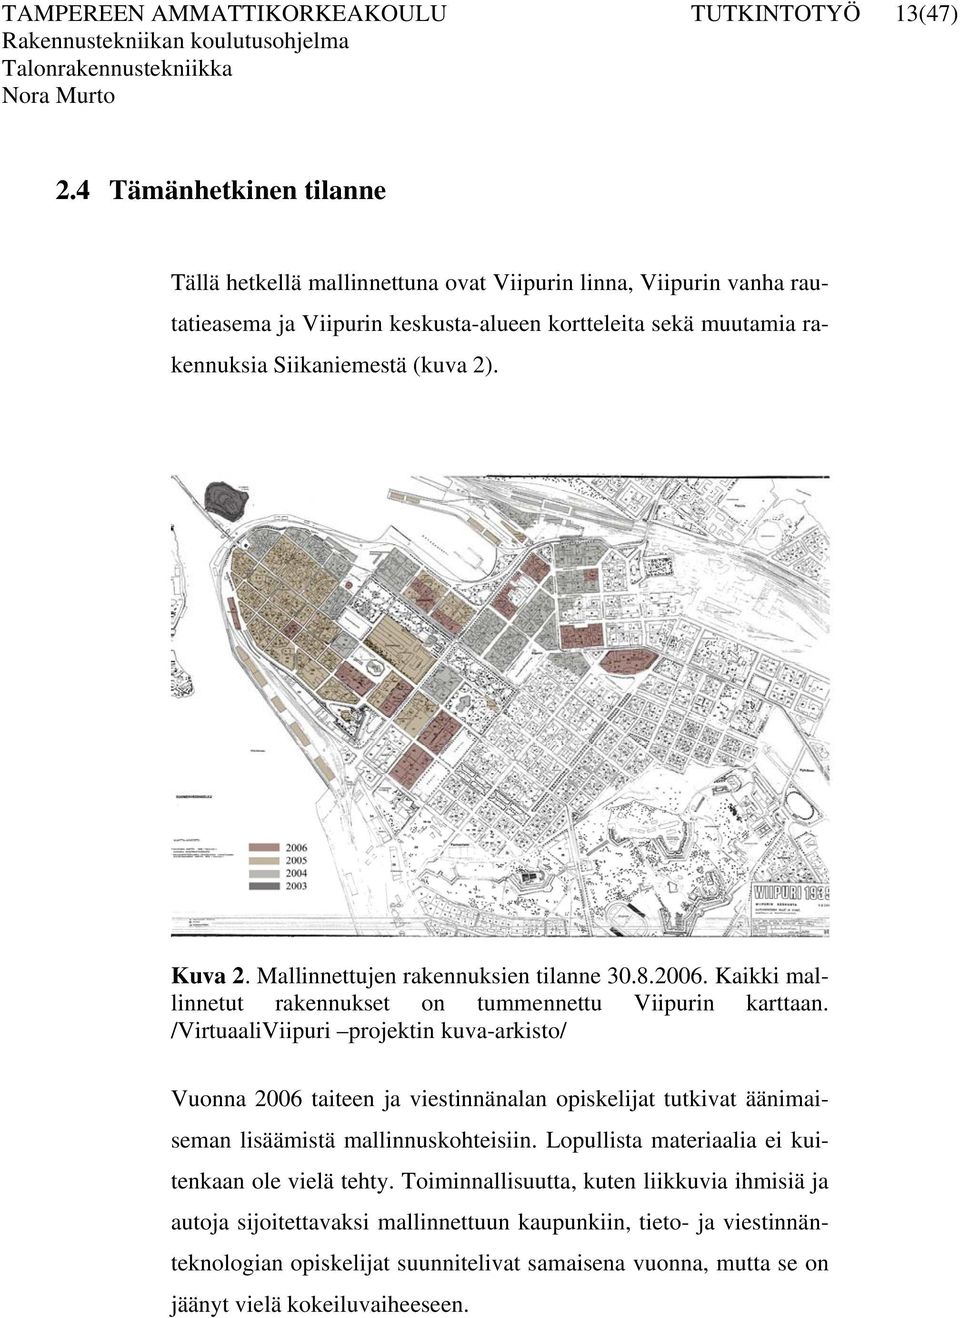 Kuva 2. Mallinnettujen rakennuksien tilanne 30.8.2006. Kaikki mallinnetut rakennukset on tummennettu Viipurin karttaan.